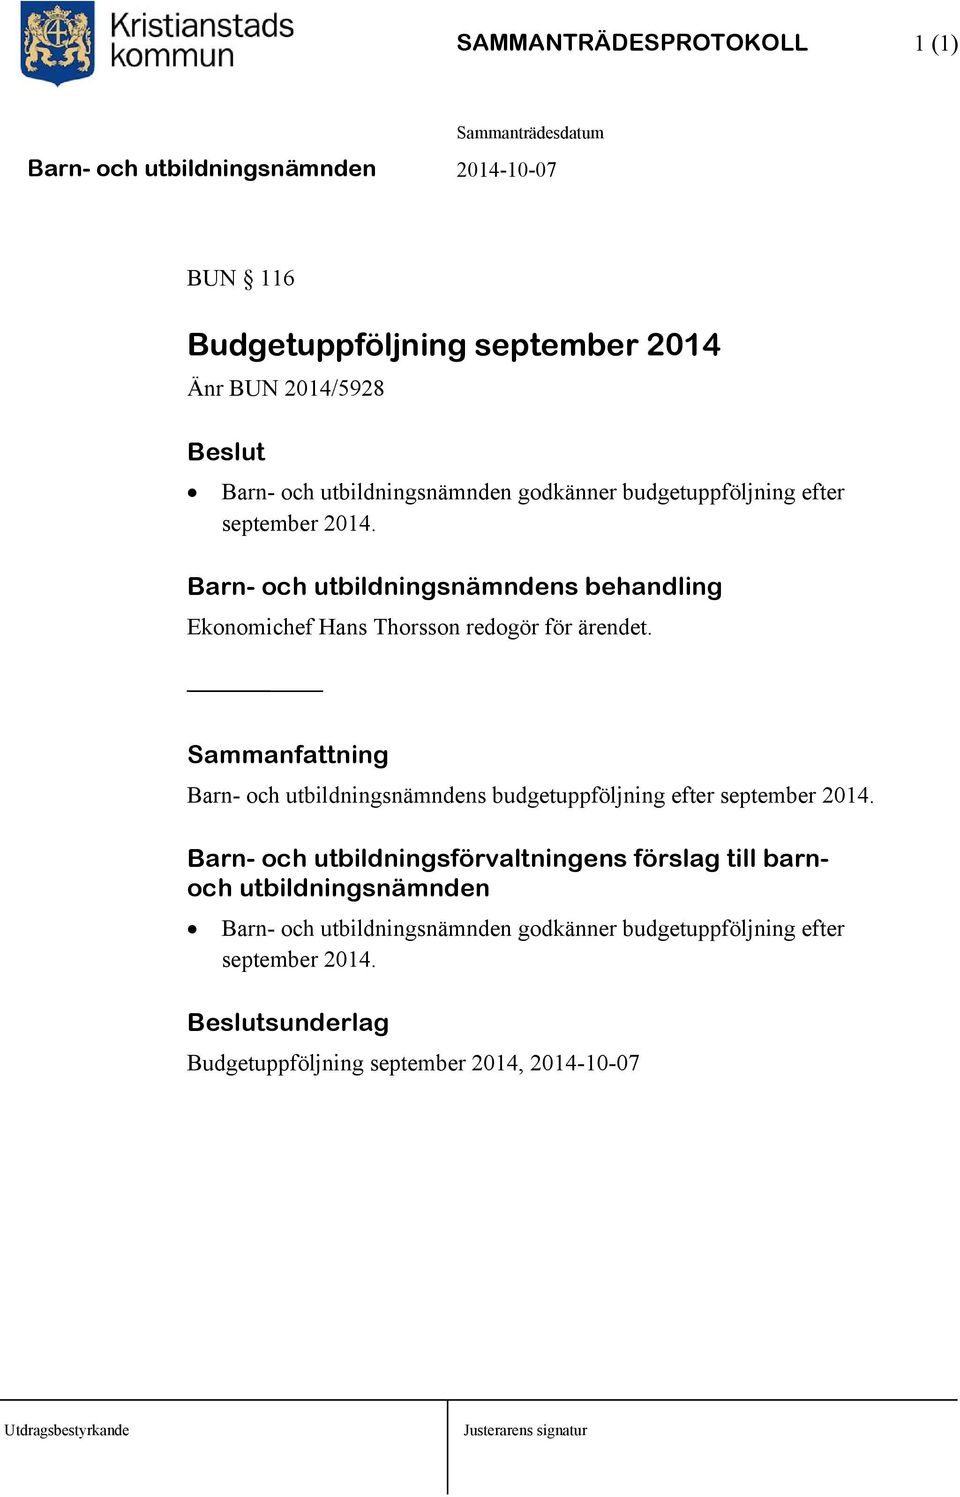 Barn- och utbildningsnämndens budgetuppföljning efter september 2014.